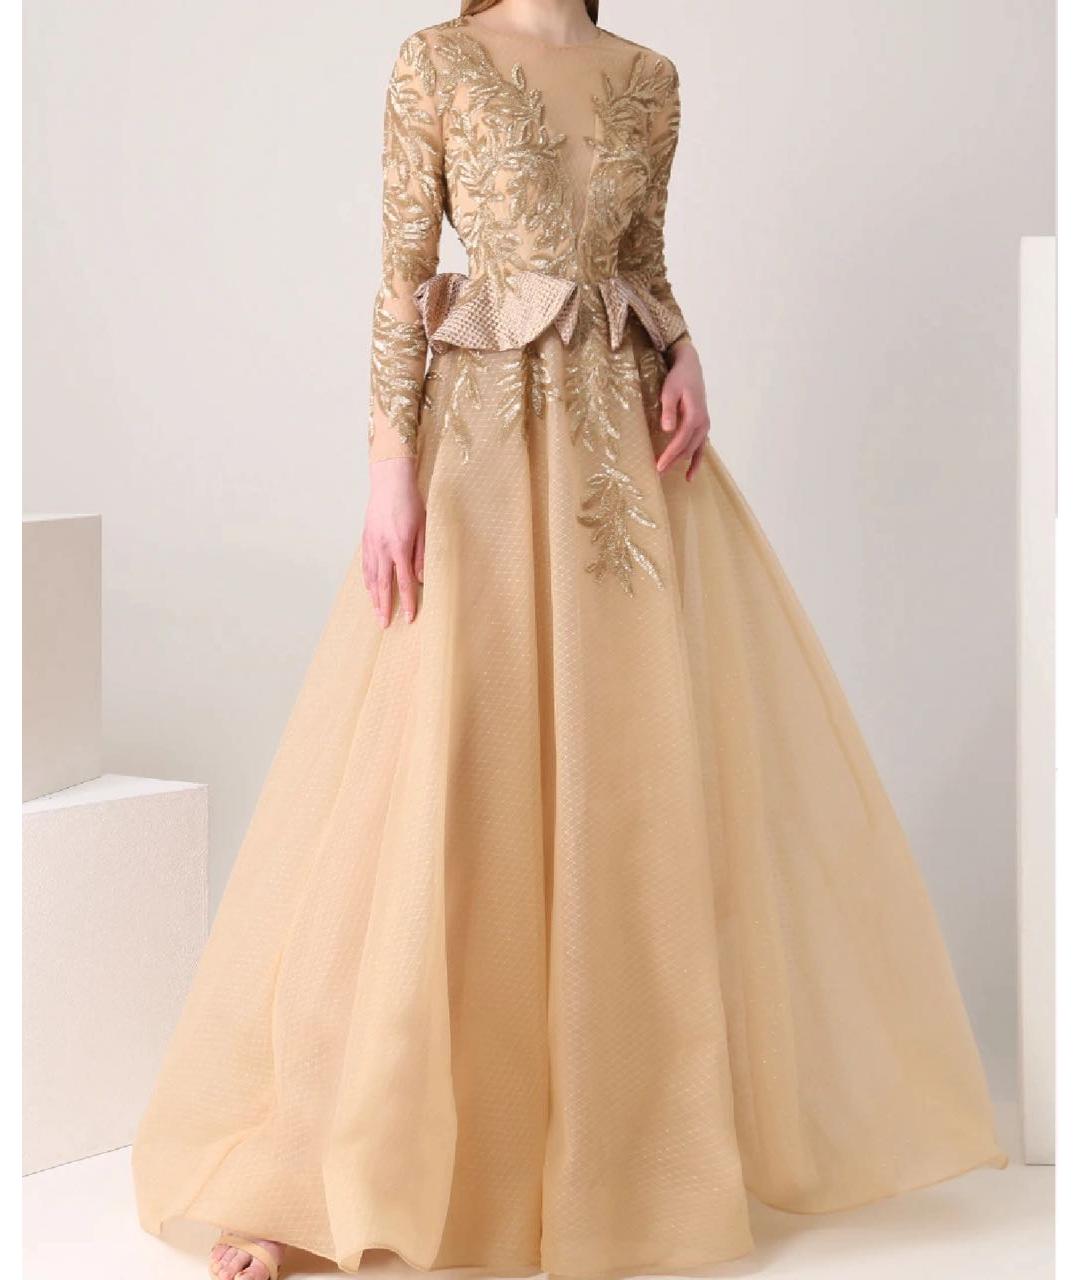 SAIID KOBEISY Золотое кружевное вечернее платье, фото 3